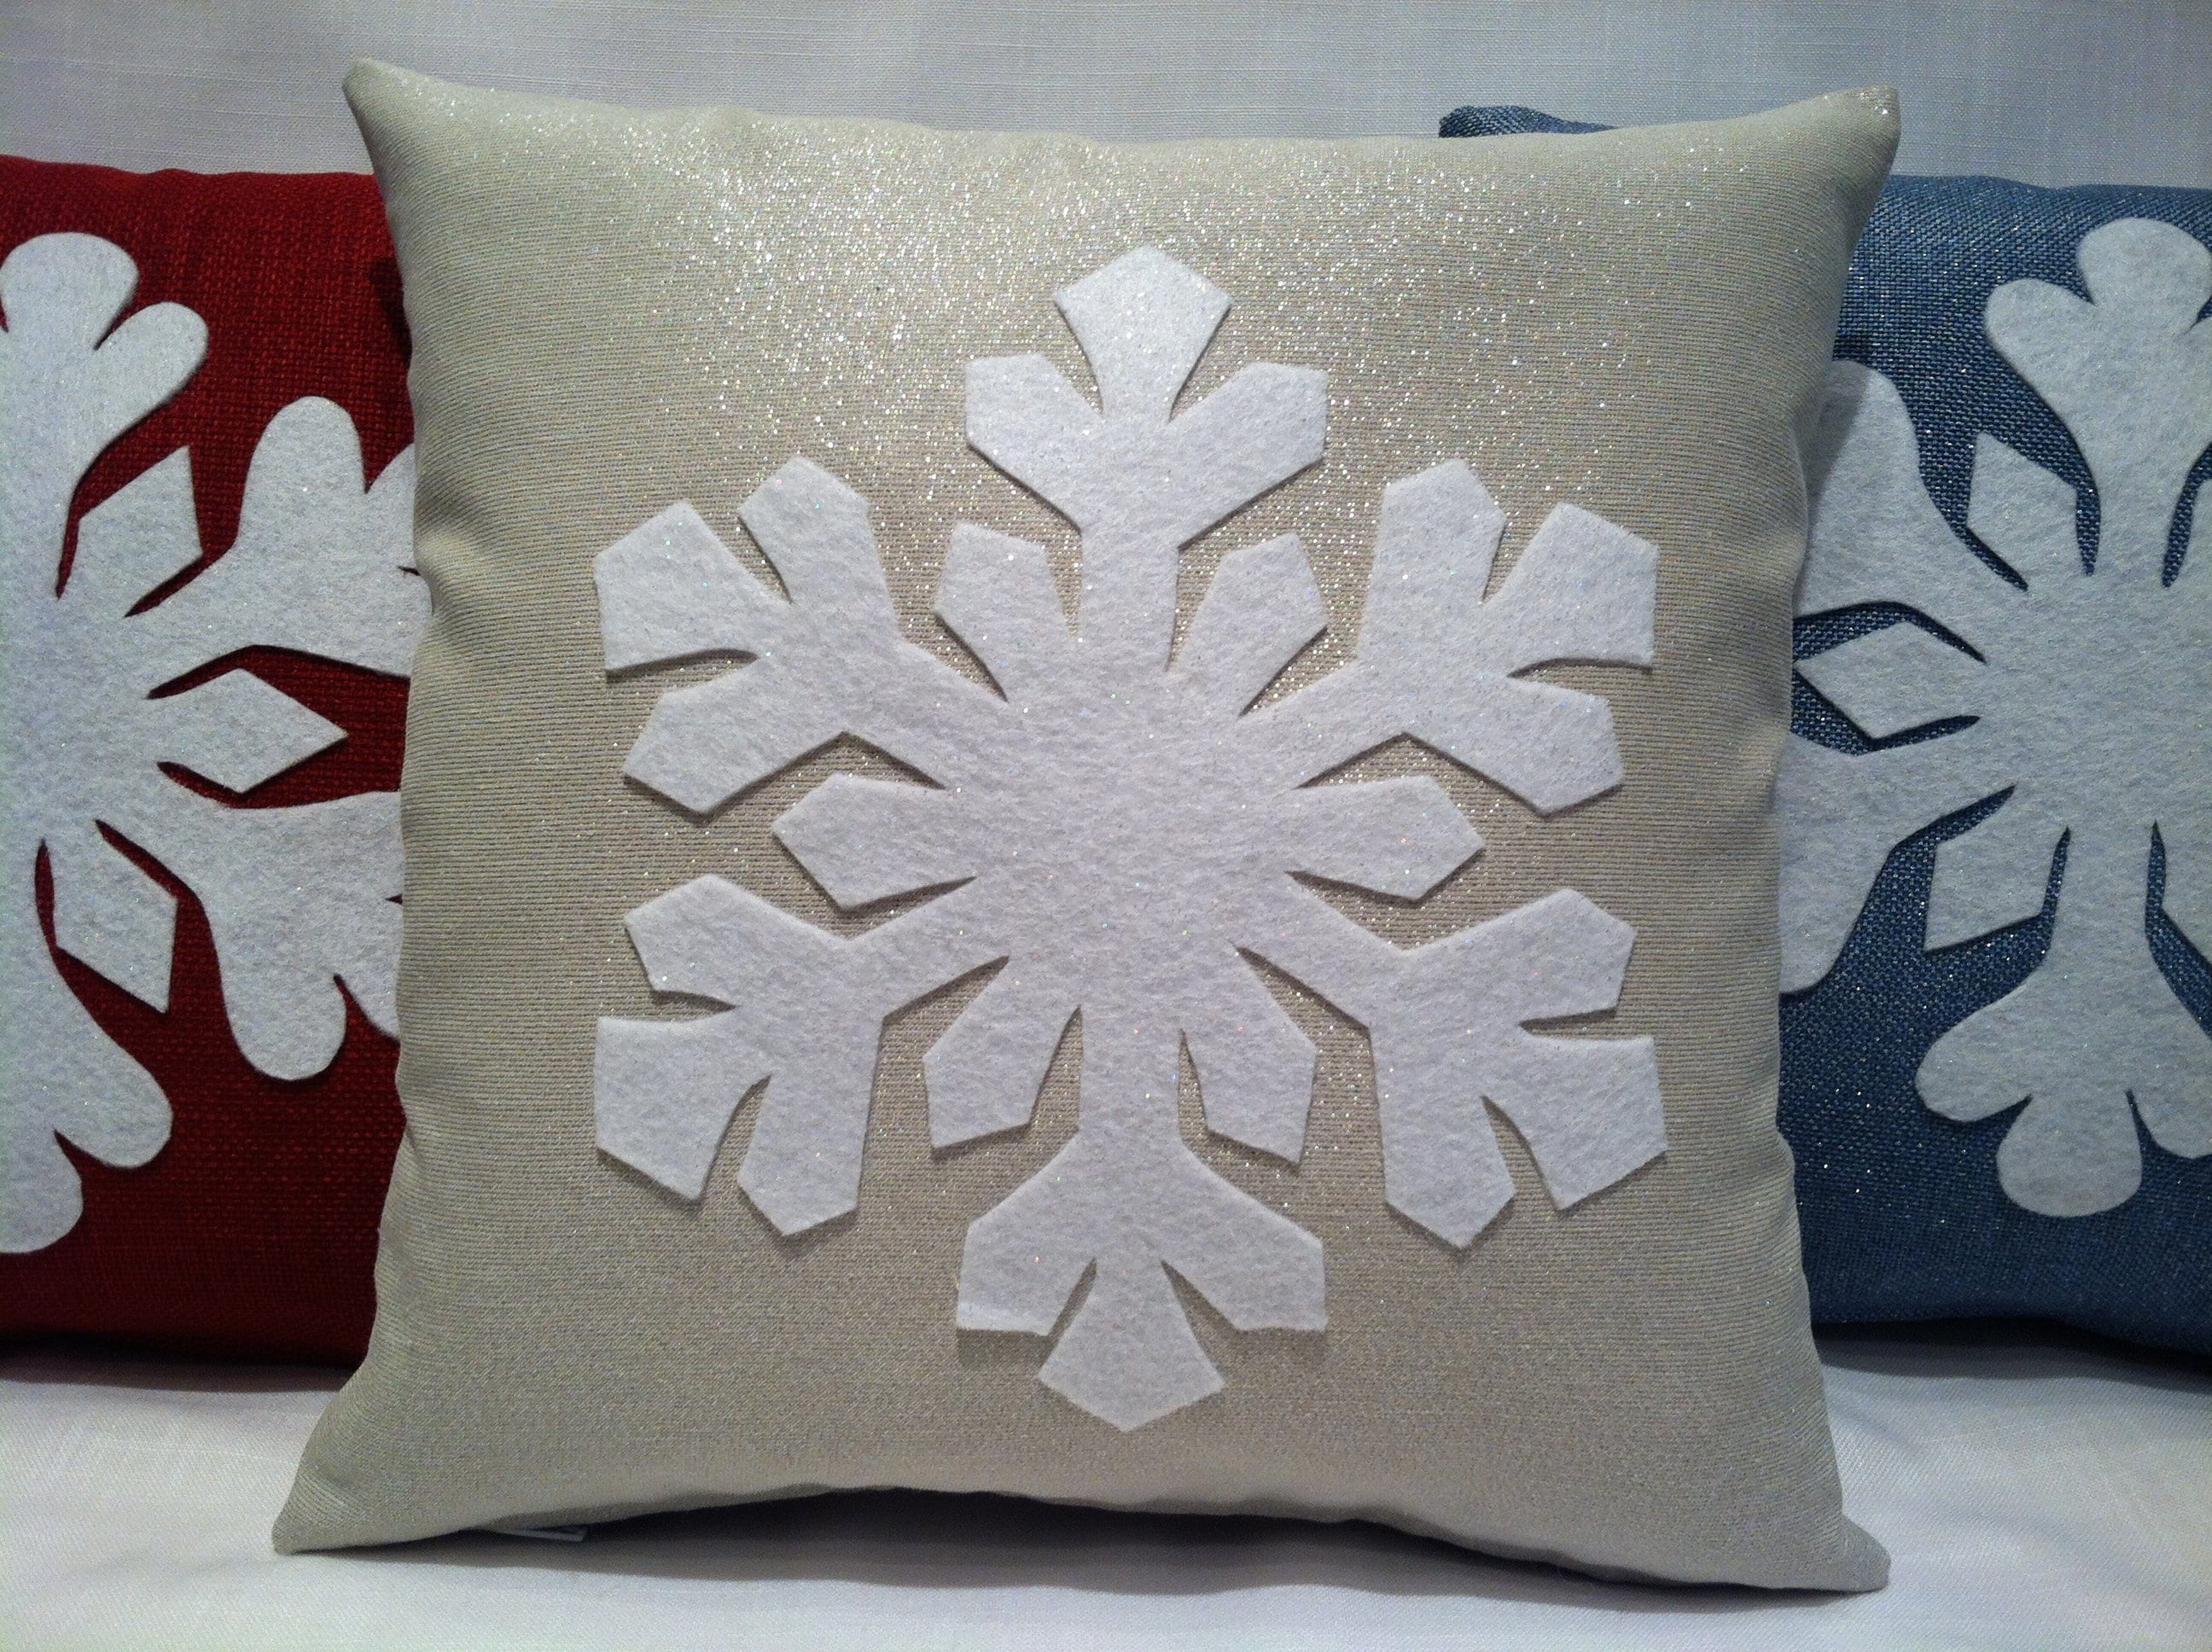 Glitter Snowflake Clip Art. Sparkle Christmas Snowflakes. Frozen